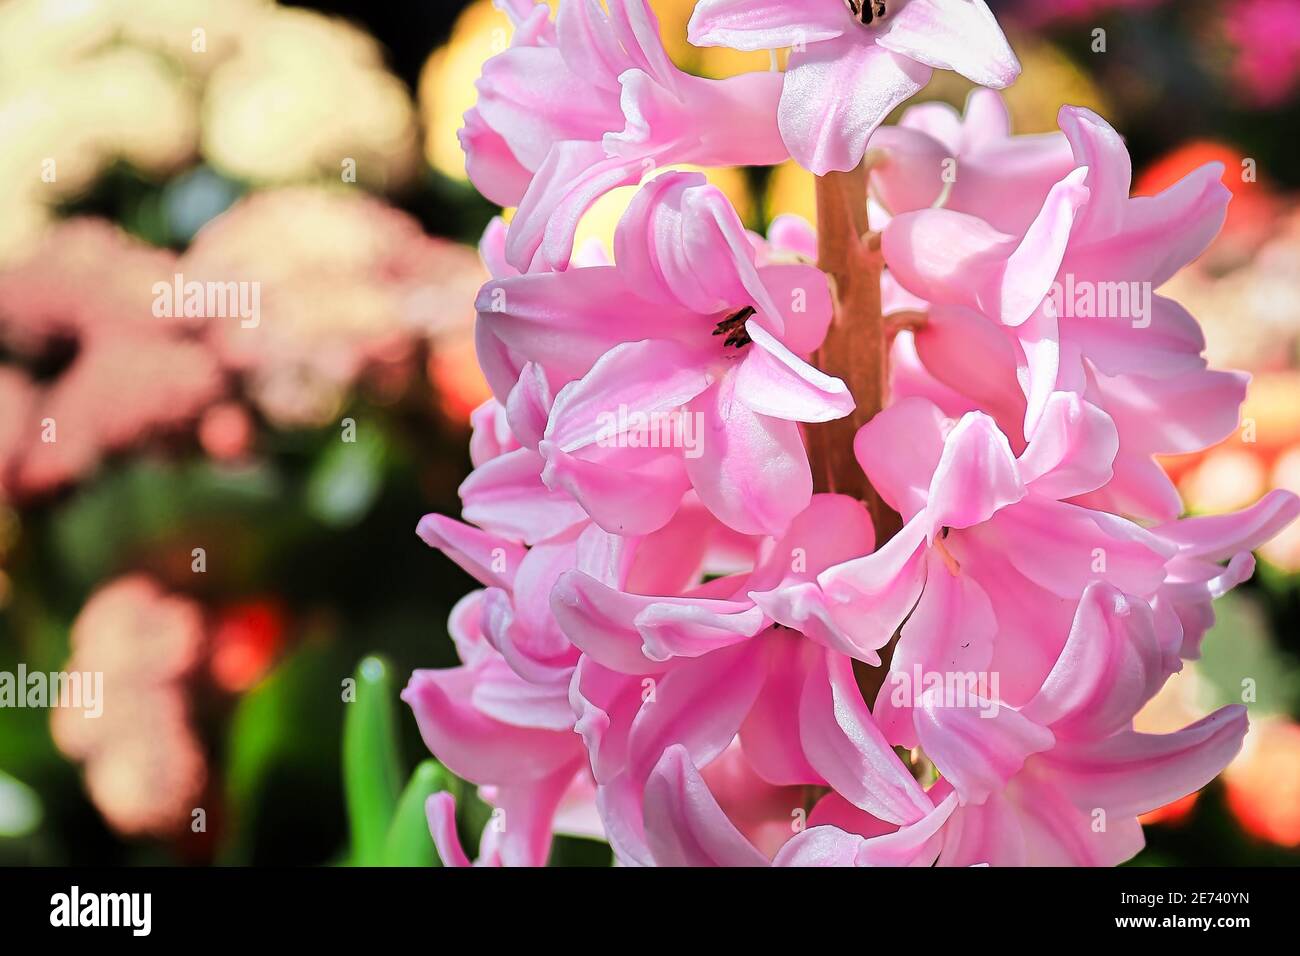 Macro view of pink hyacinth flowers in bloom Stock Photo